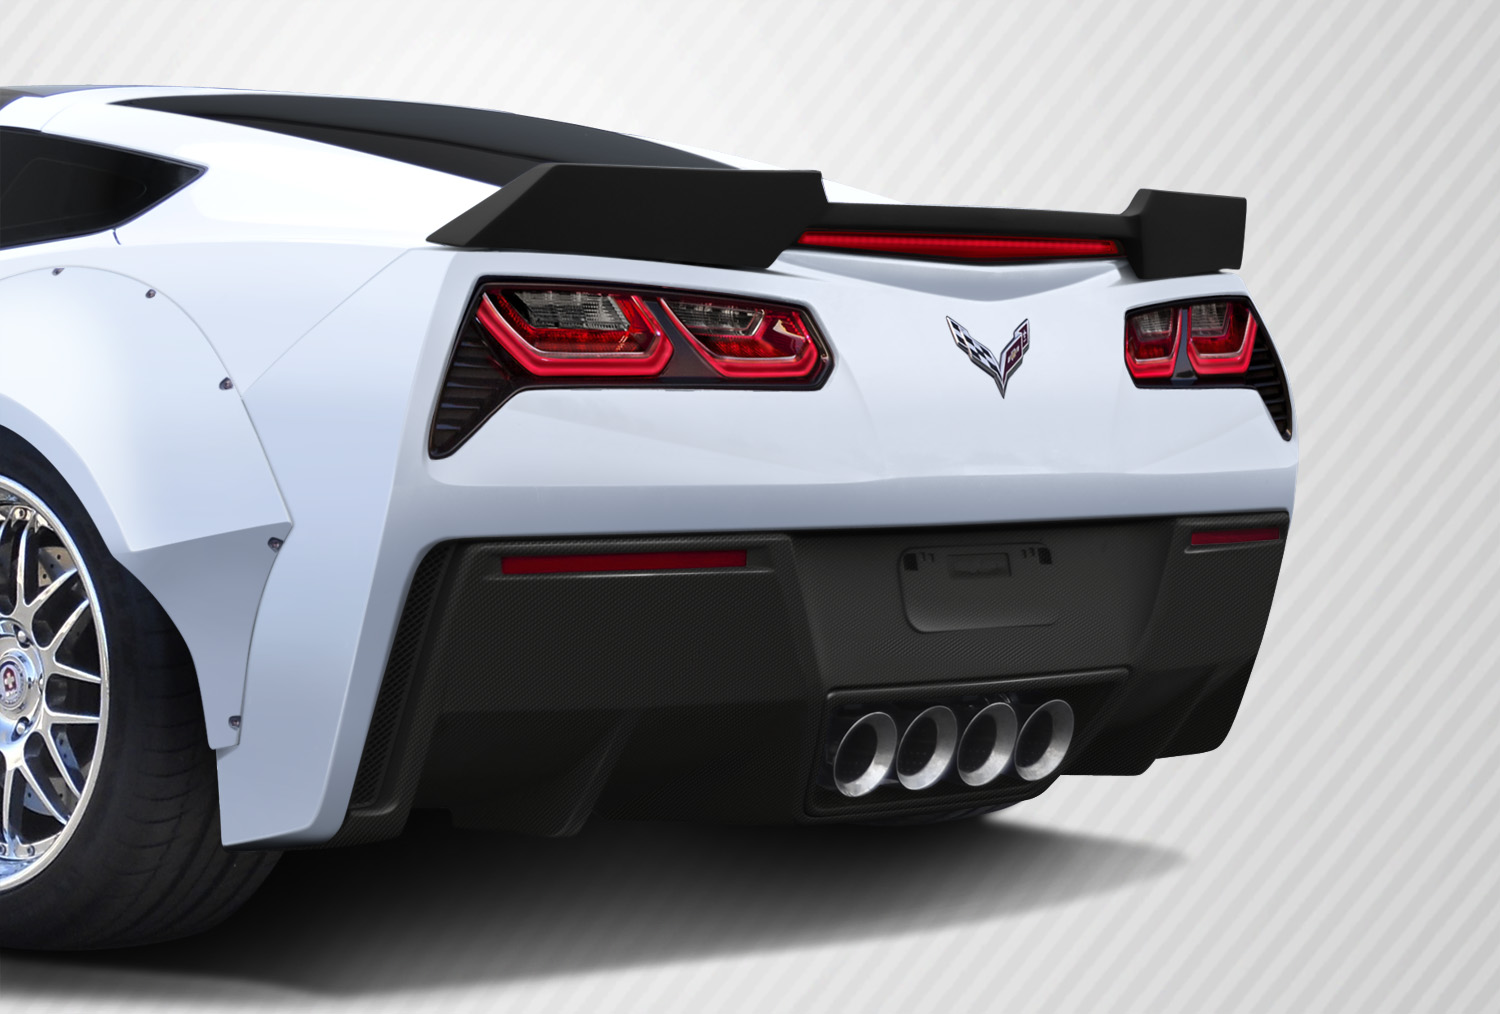 2015 Chevrolet Corvette ALL - Carbon Fiber Fibre Body Kit Bodykit - Chevrolet Corvette C7 Carbon Creations Apex Body Kit - 7 Piece - Includes Carbon C